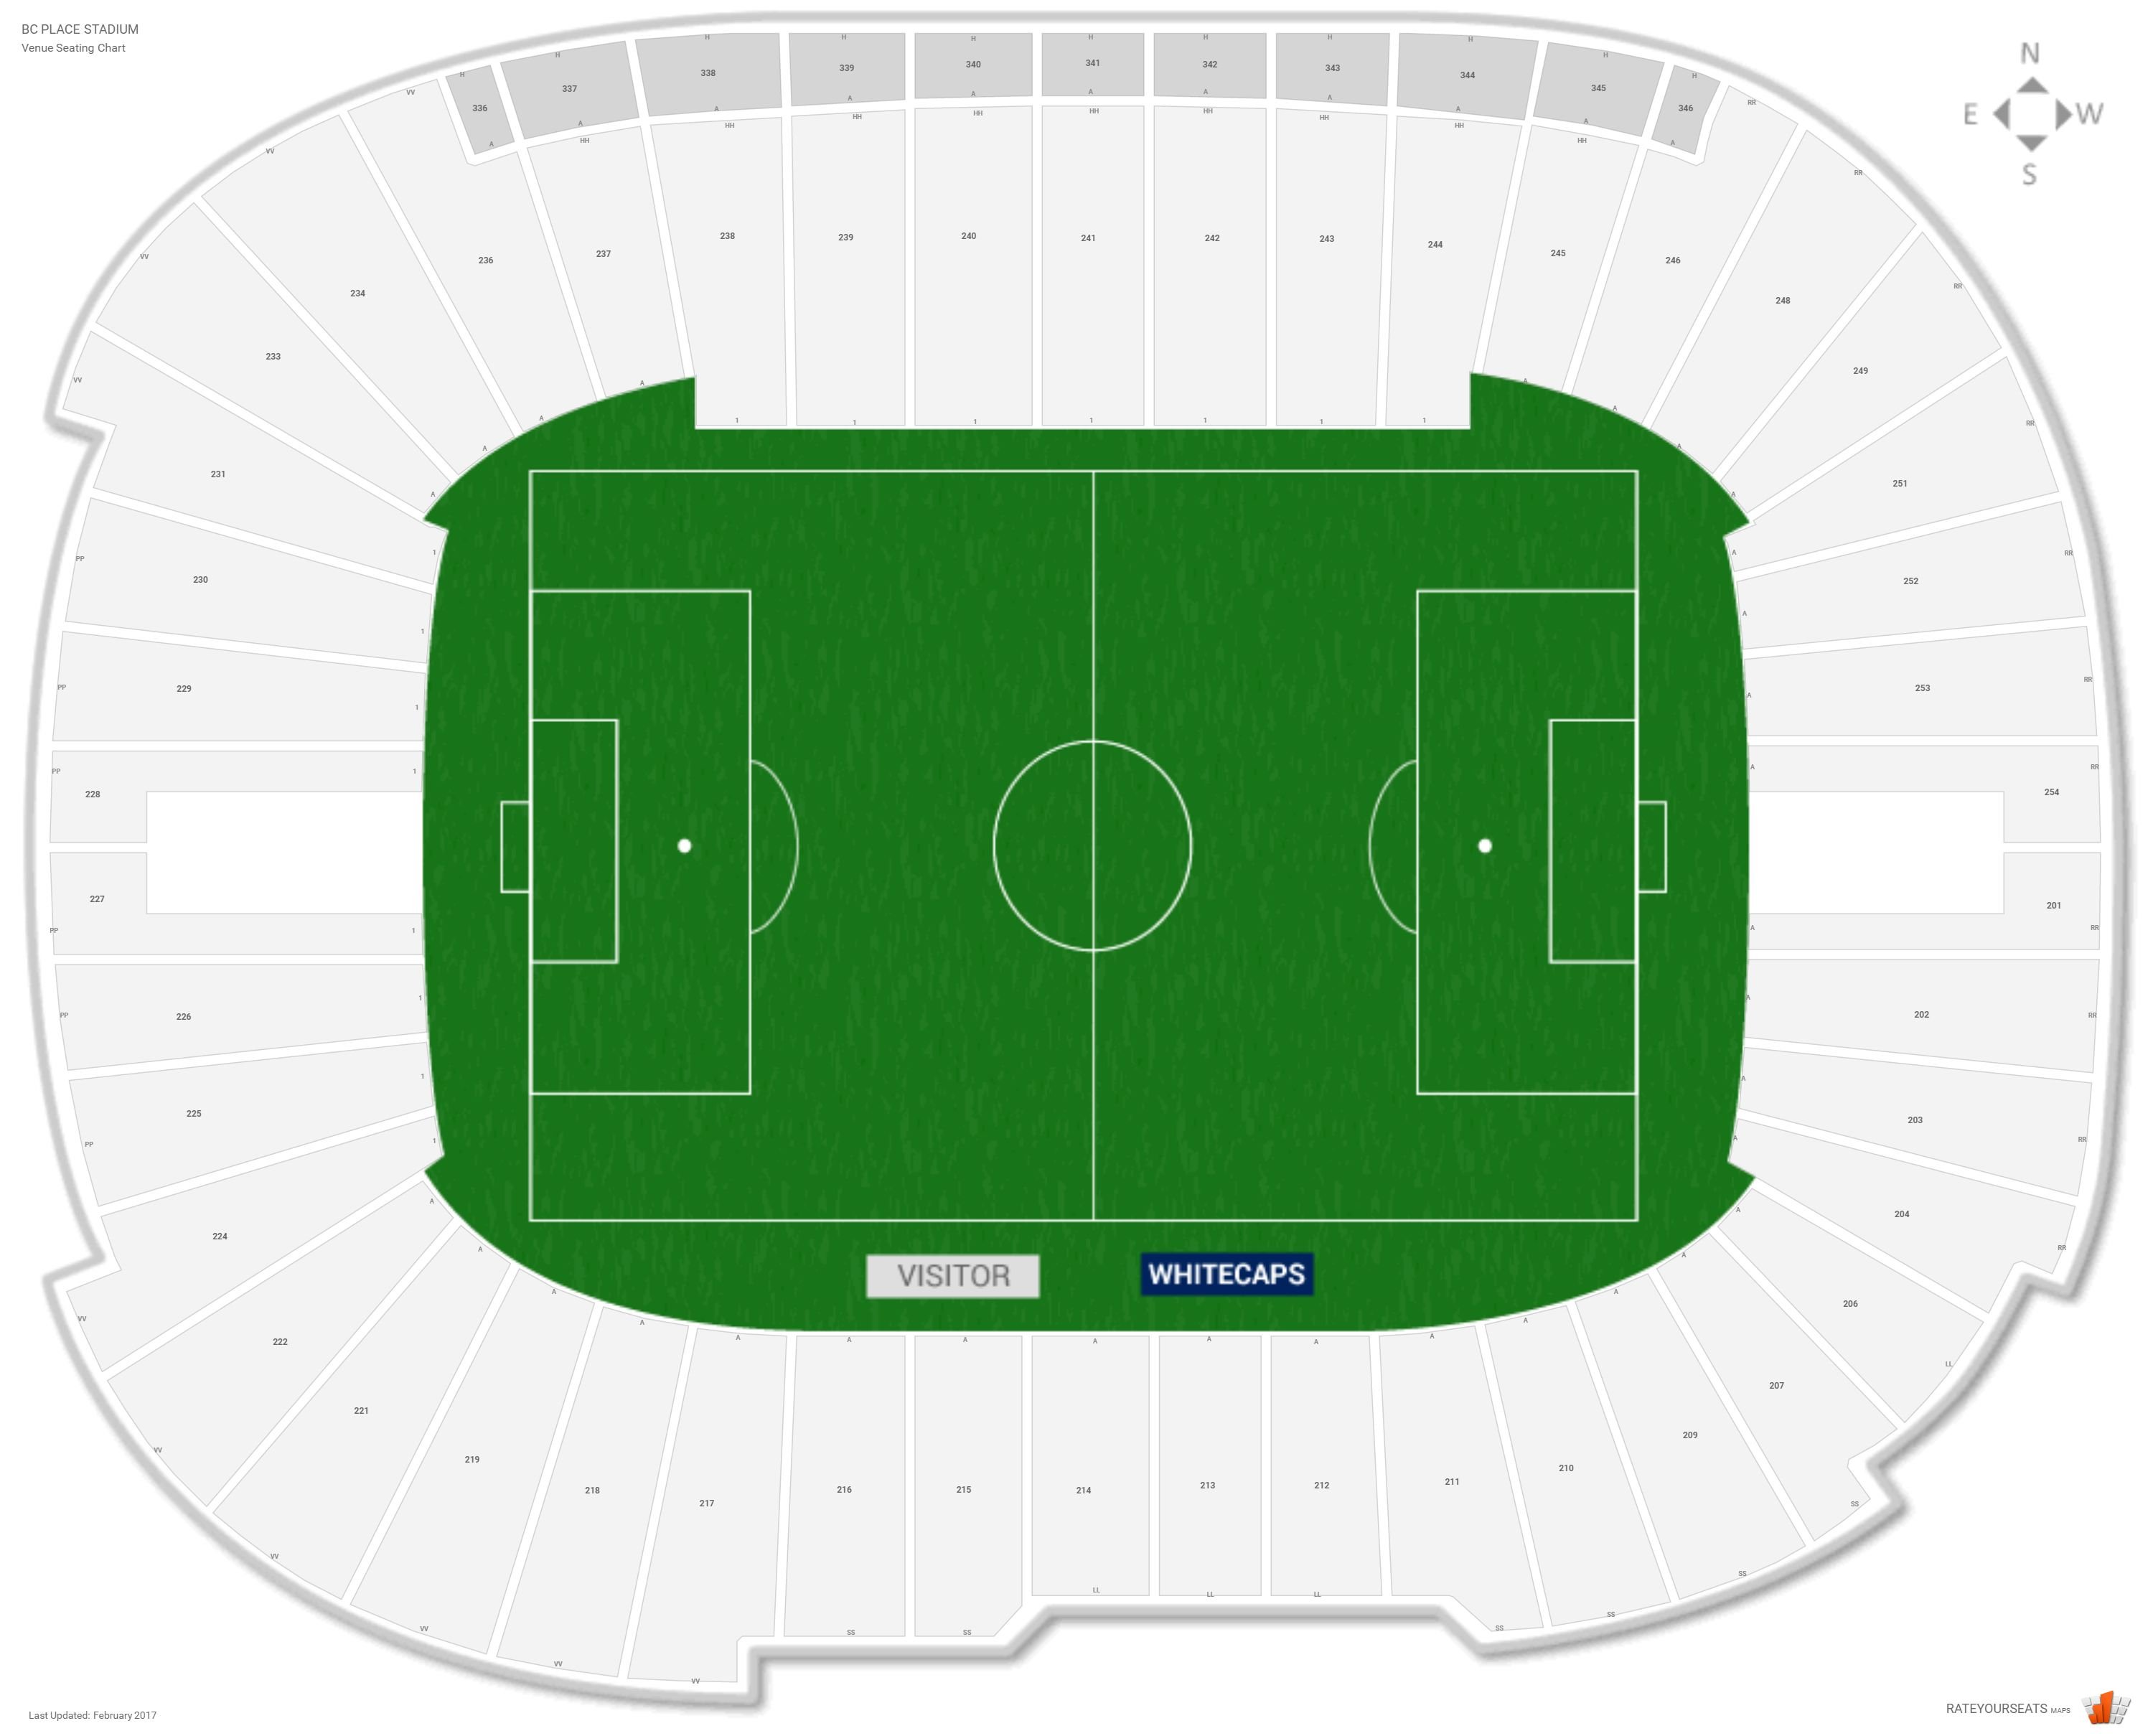 Bc Place Stadium Seating Chart Whitecaps